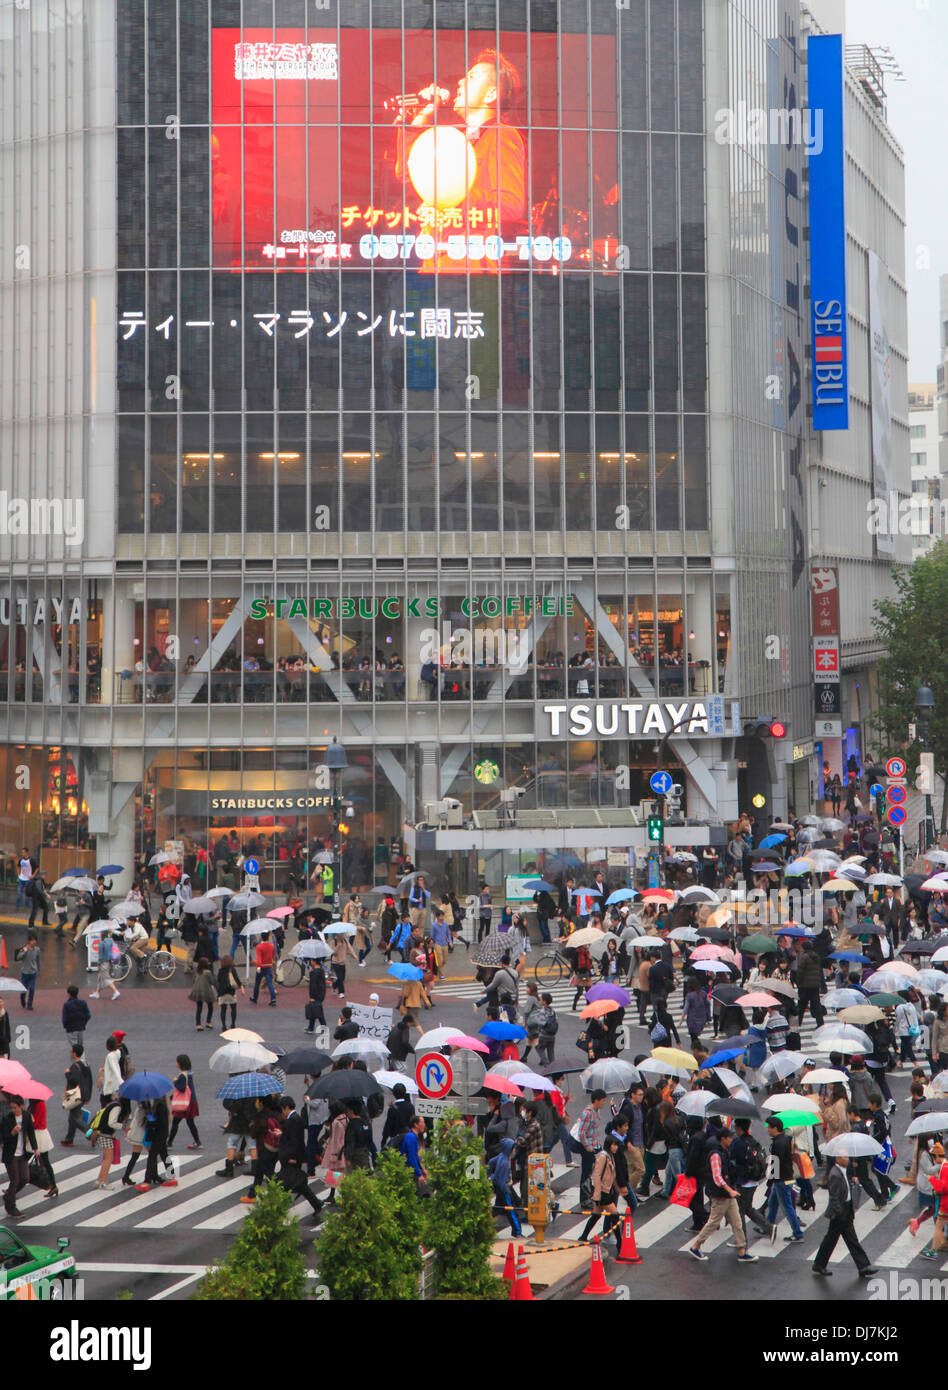 Japon, Tokyo, Shibuya, rue, foule, gens, Banque D'Images